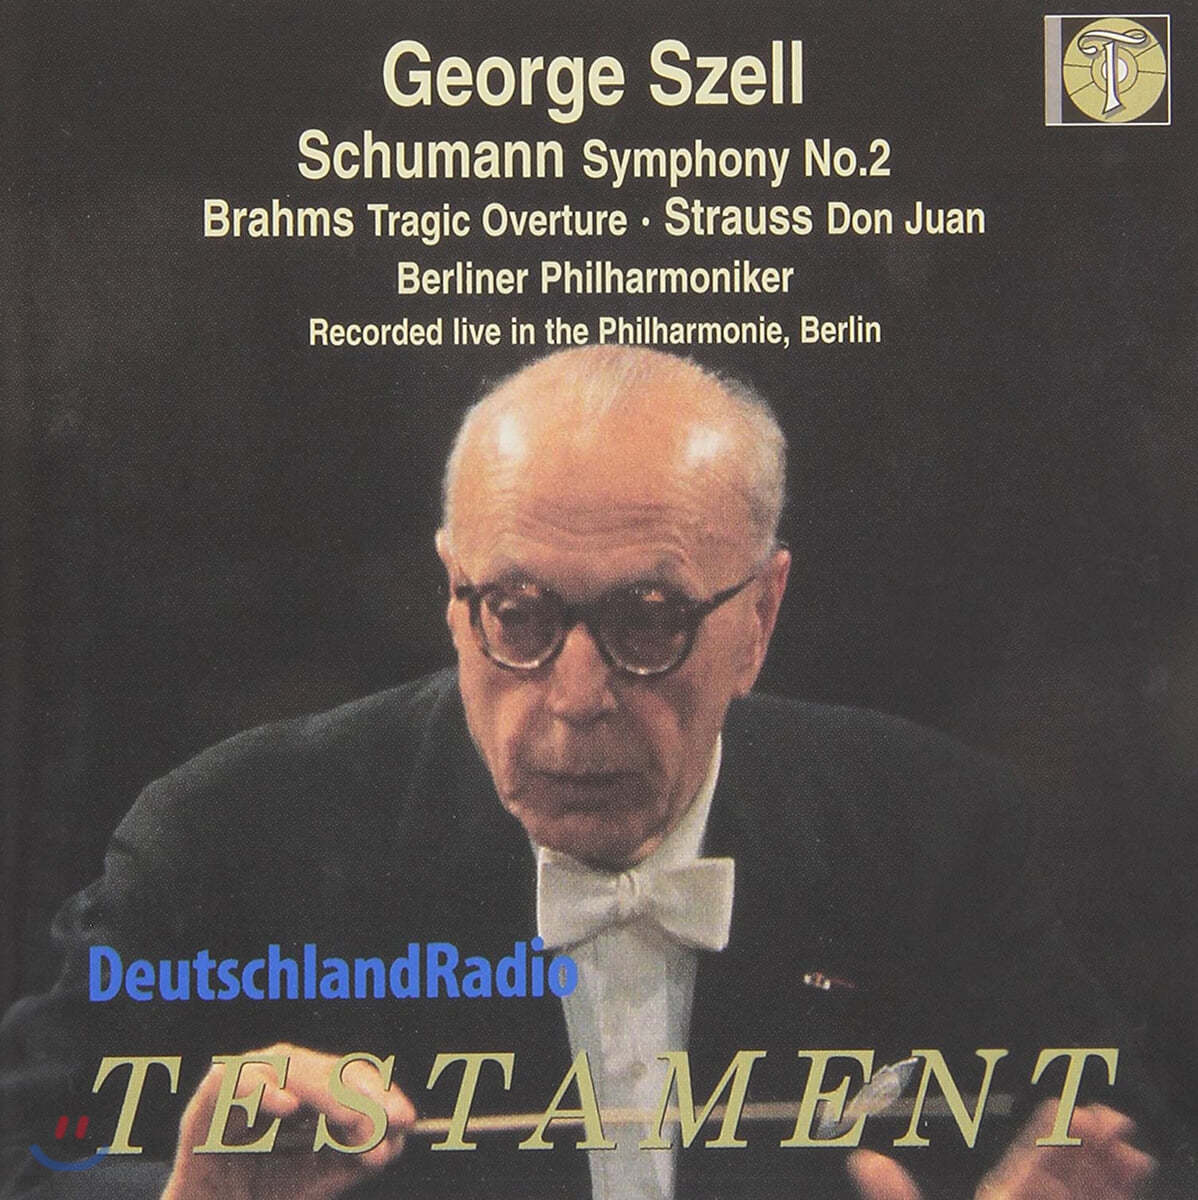 George Szell 슈만: 교향곡 2번 (Schumann: Symphony No.2 Op.61) 